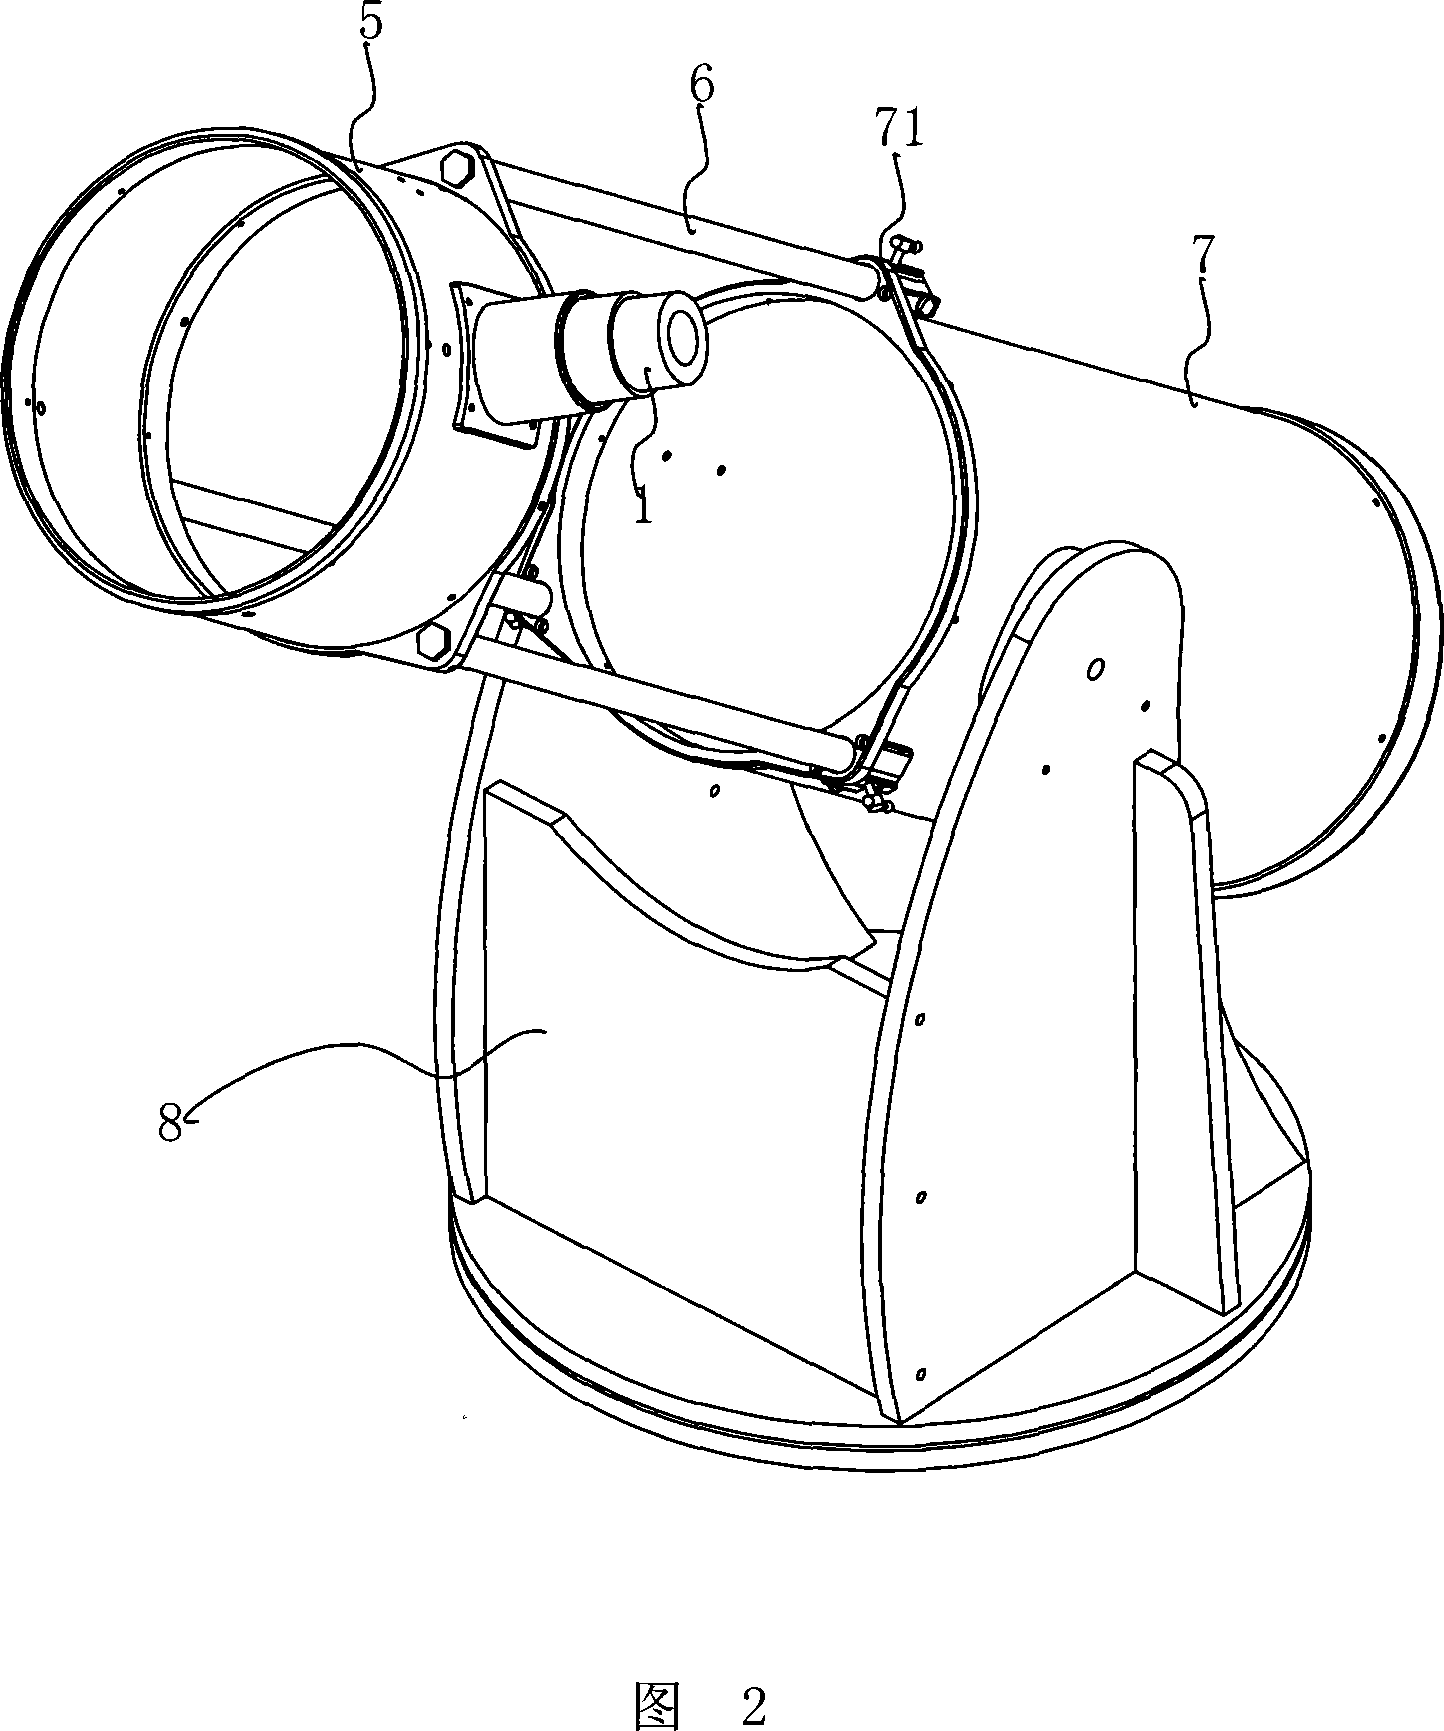 Telescopic lens cone